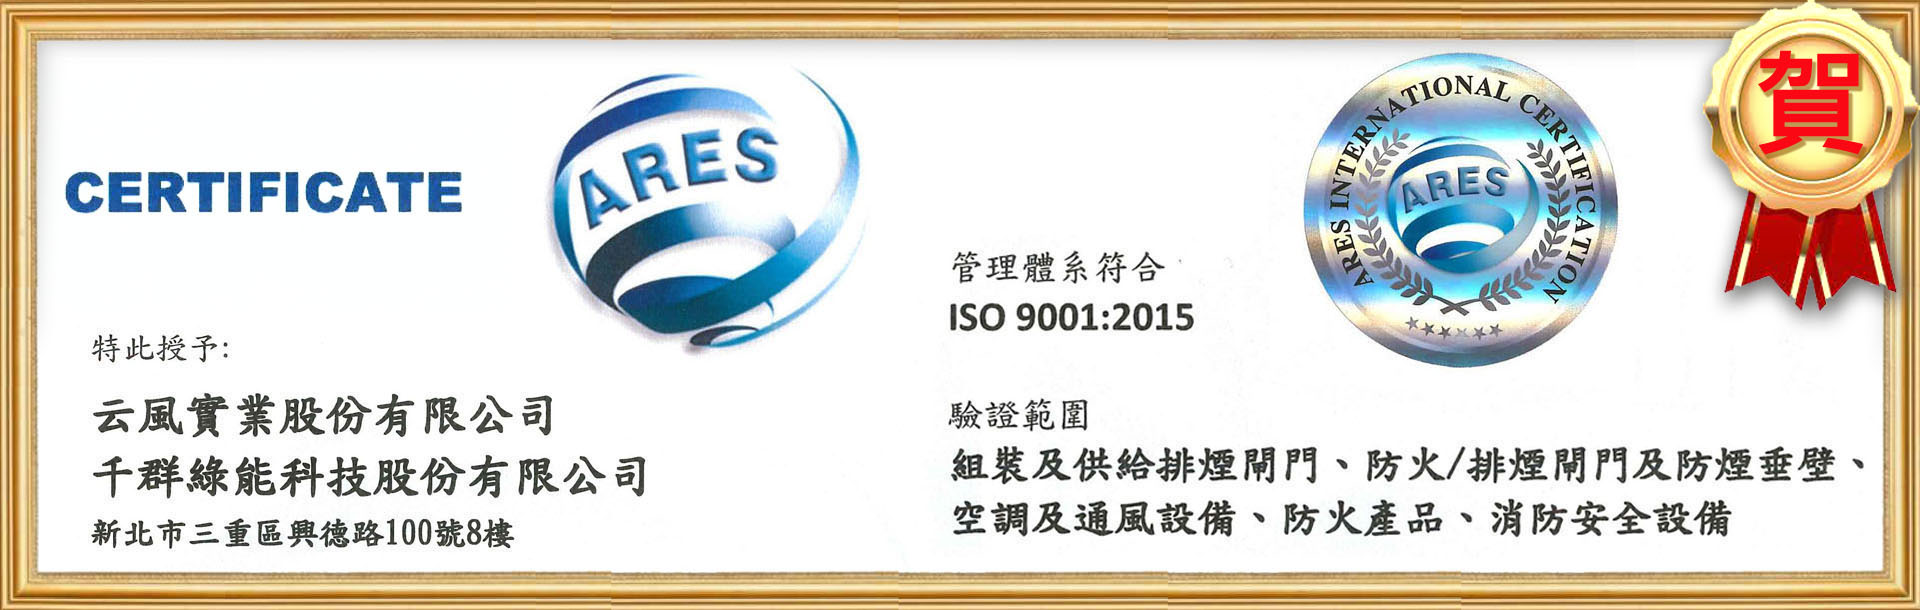 通過ISO 9001:2015認證